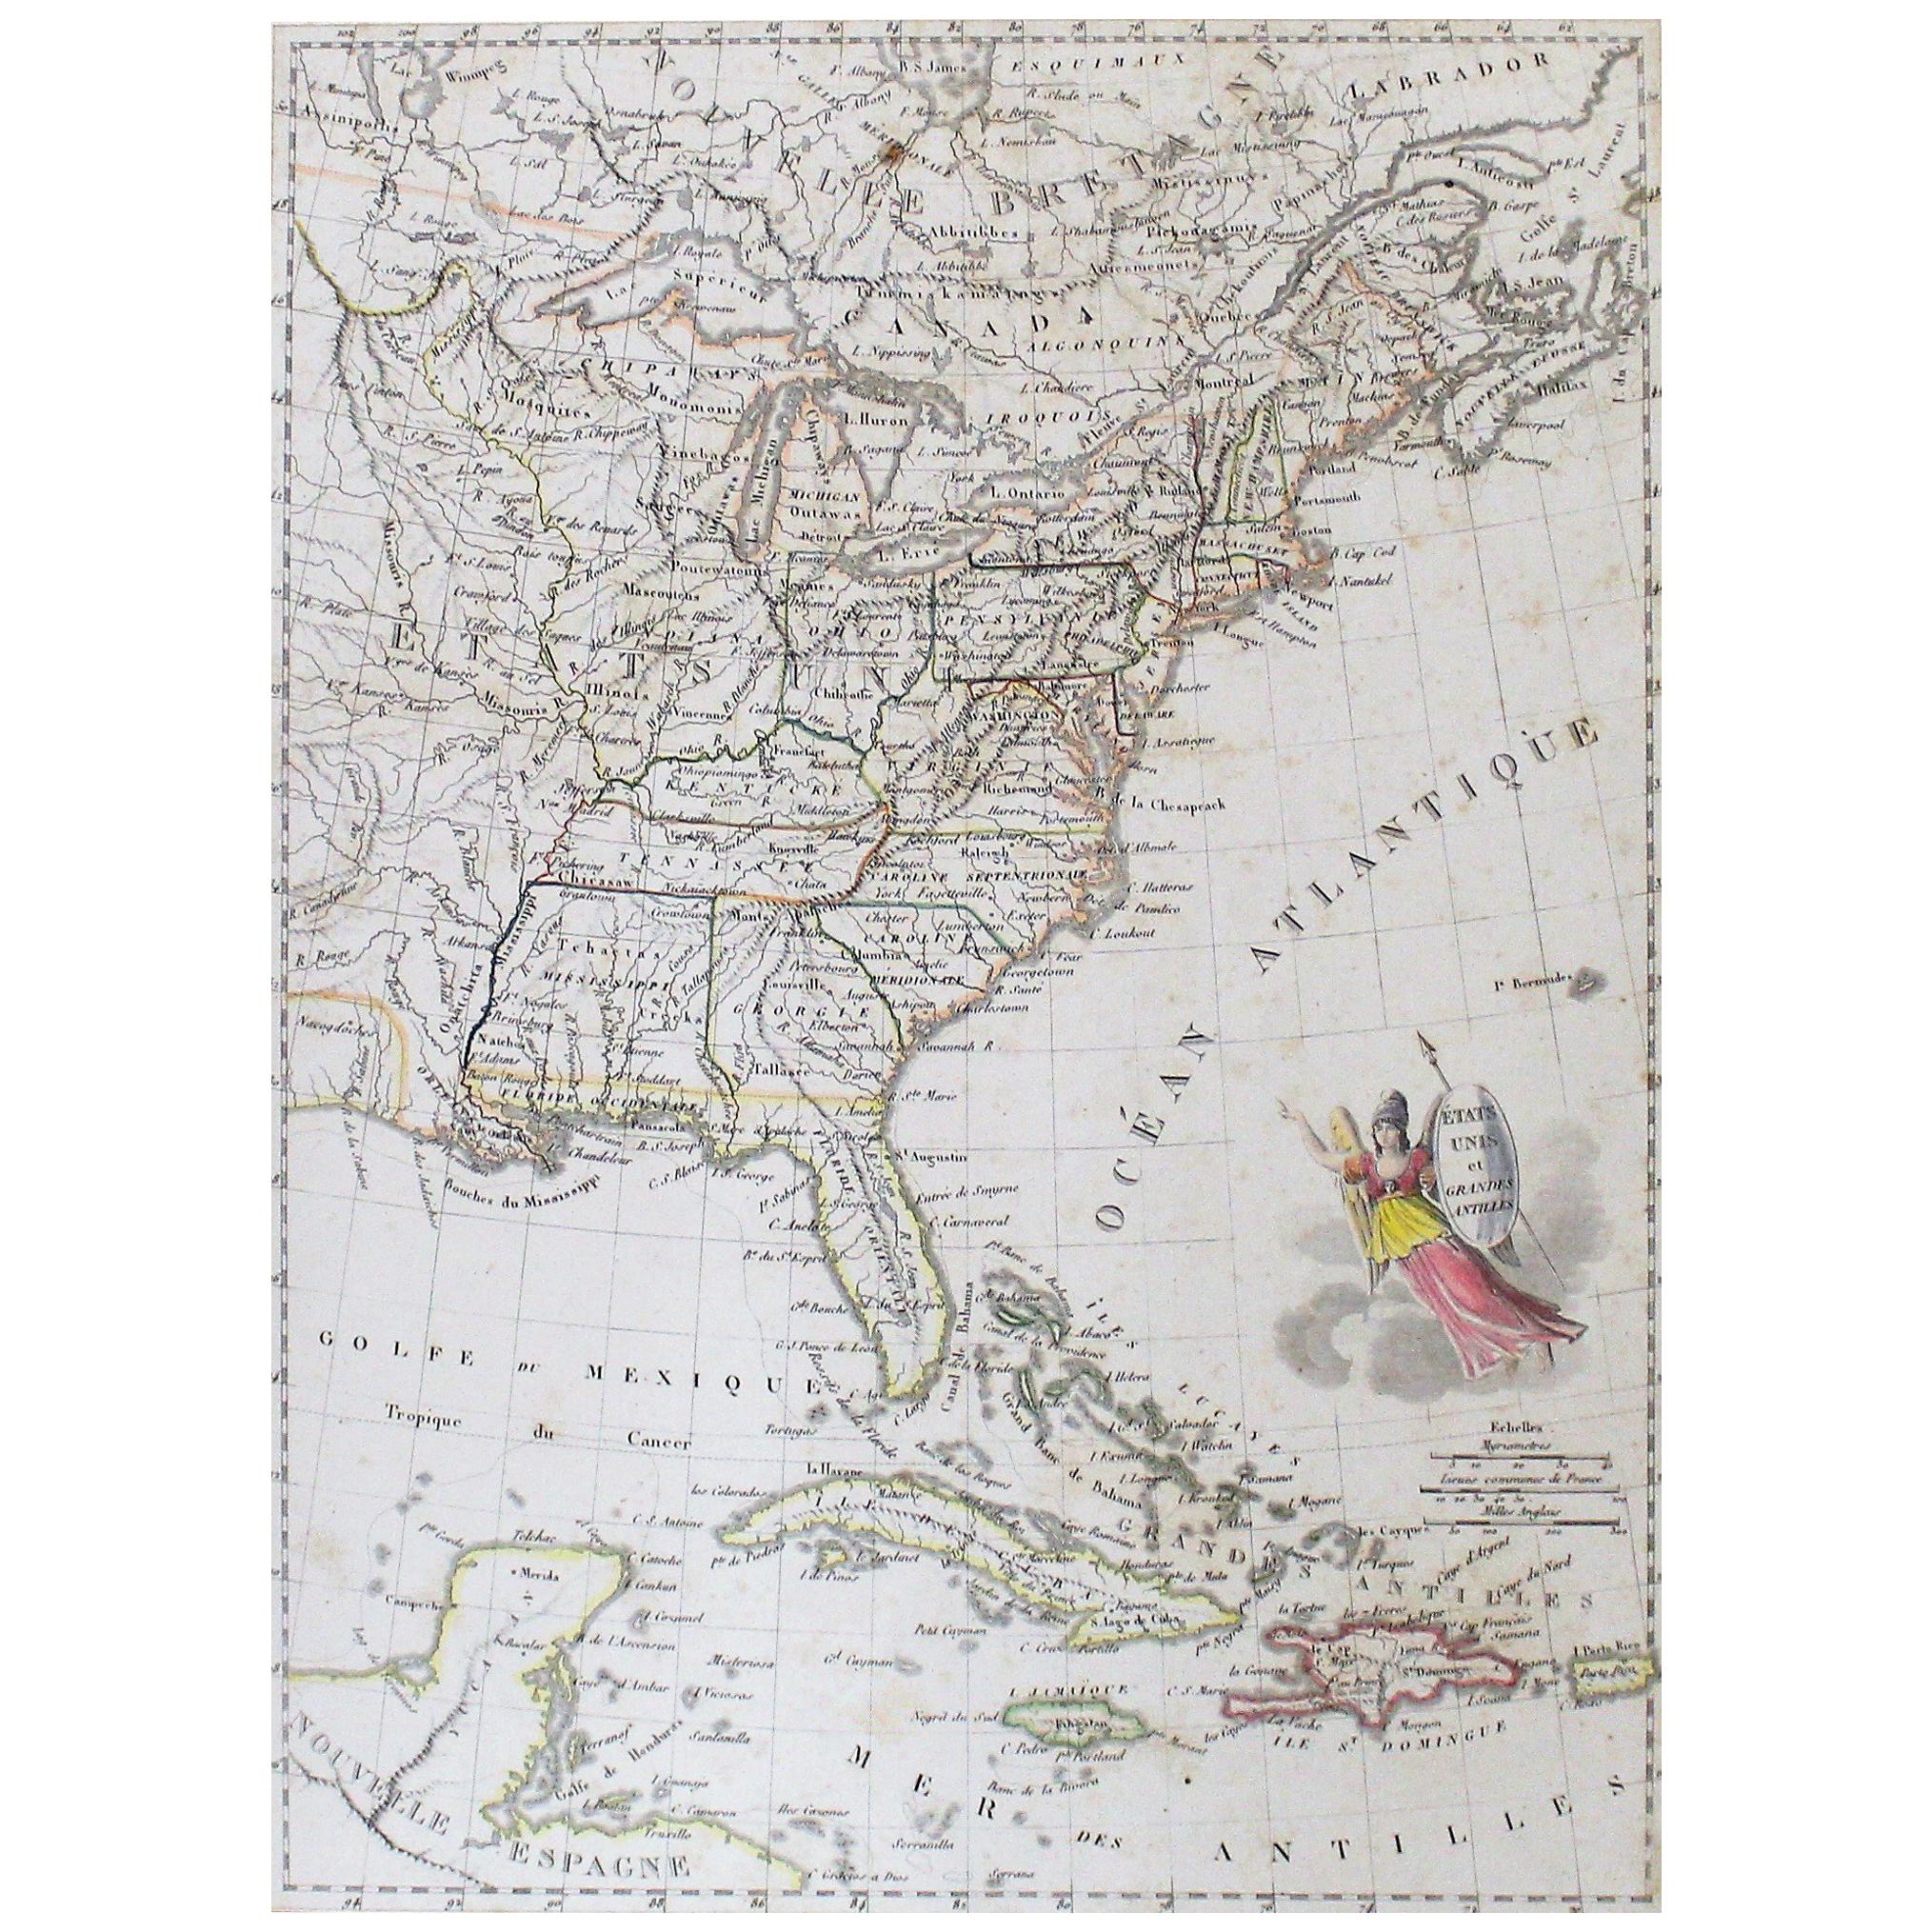 Handkolorierte Karte der Vereinigten Staaten und der Karibikinseln aus dem frühen 19. Jahrhundert